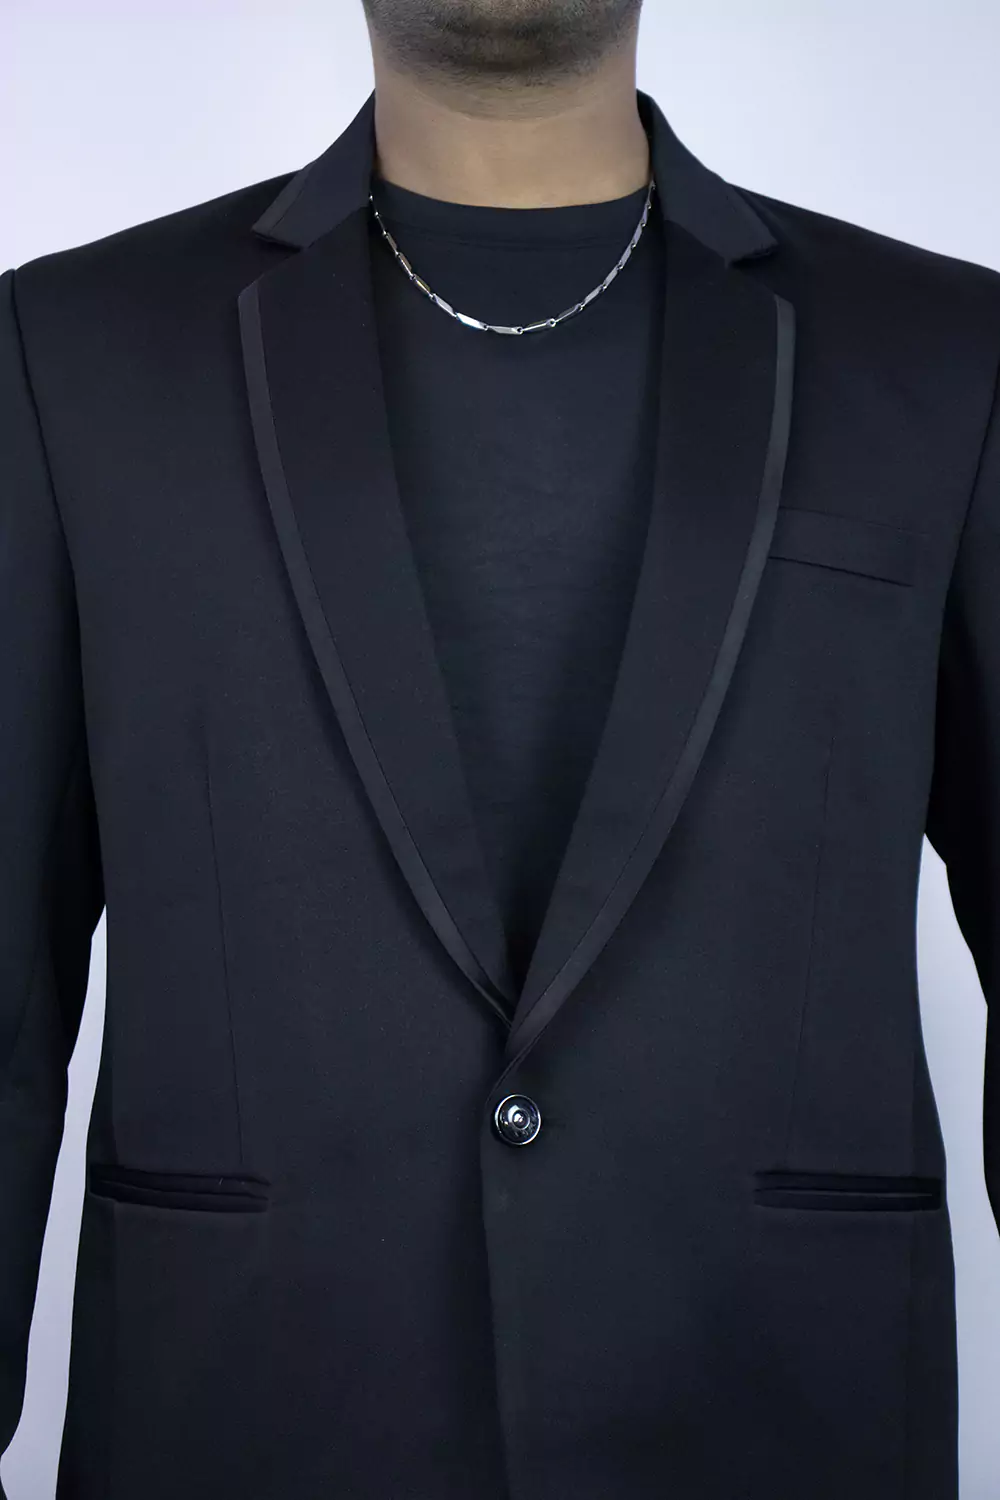 Stylish Black Classy Blazer